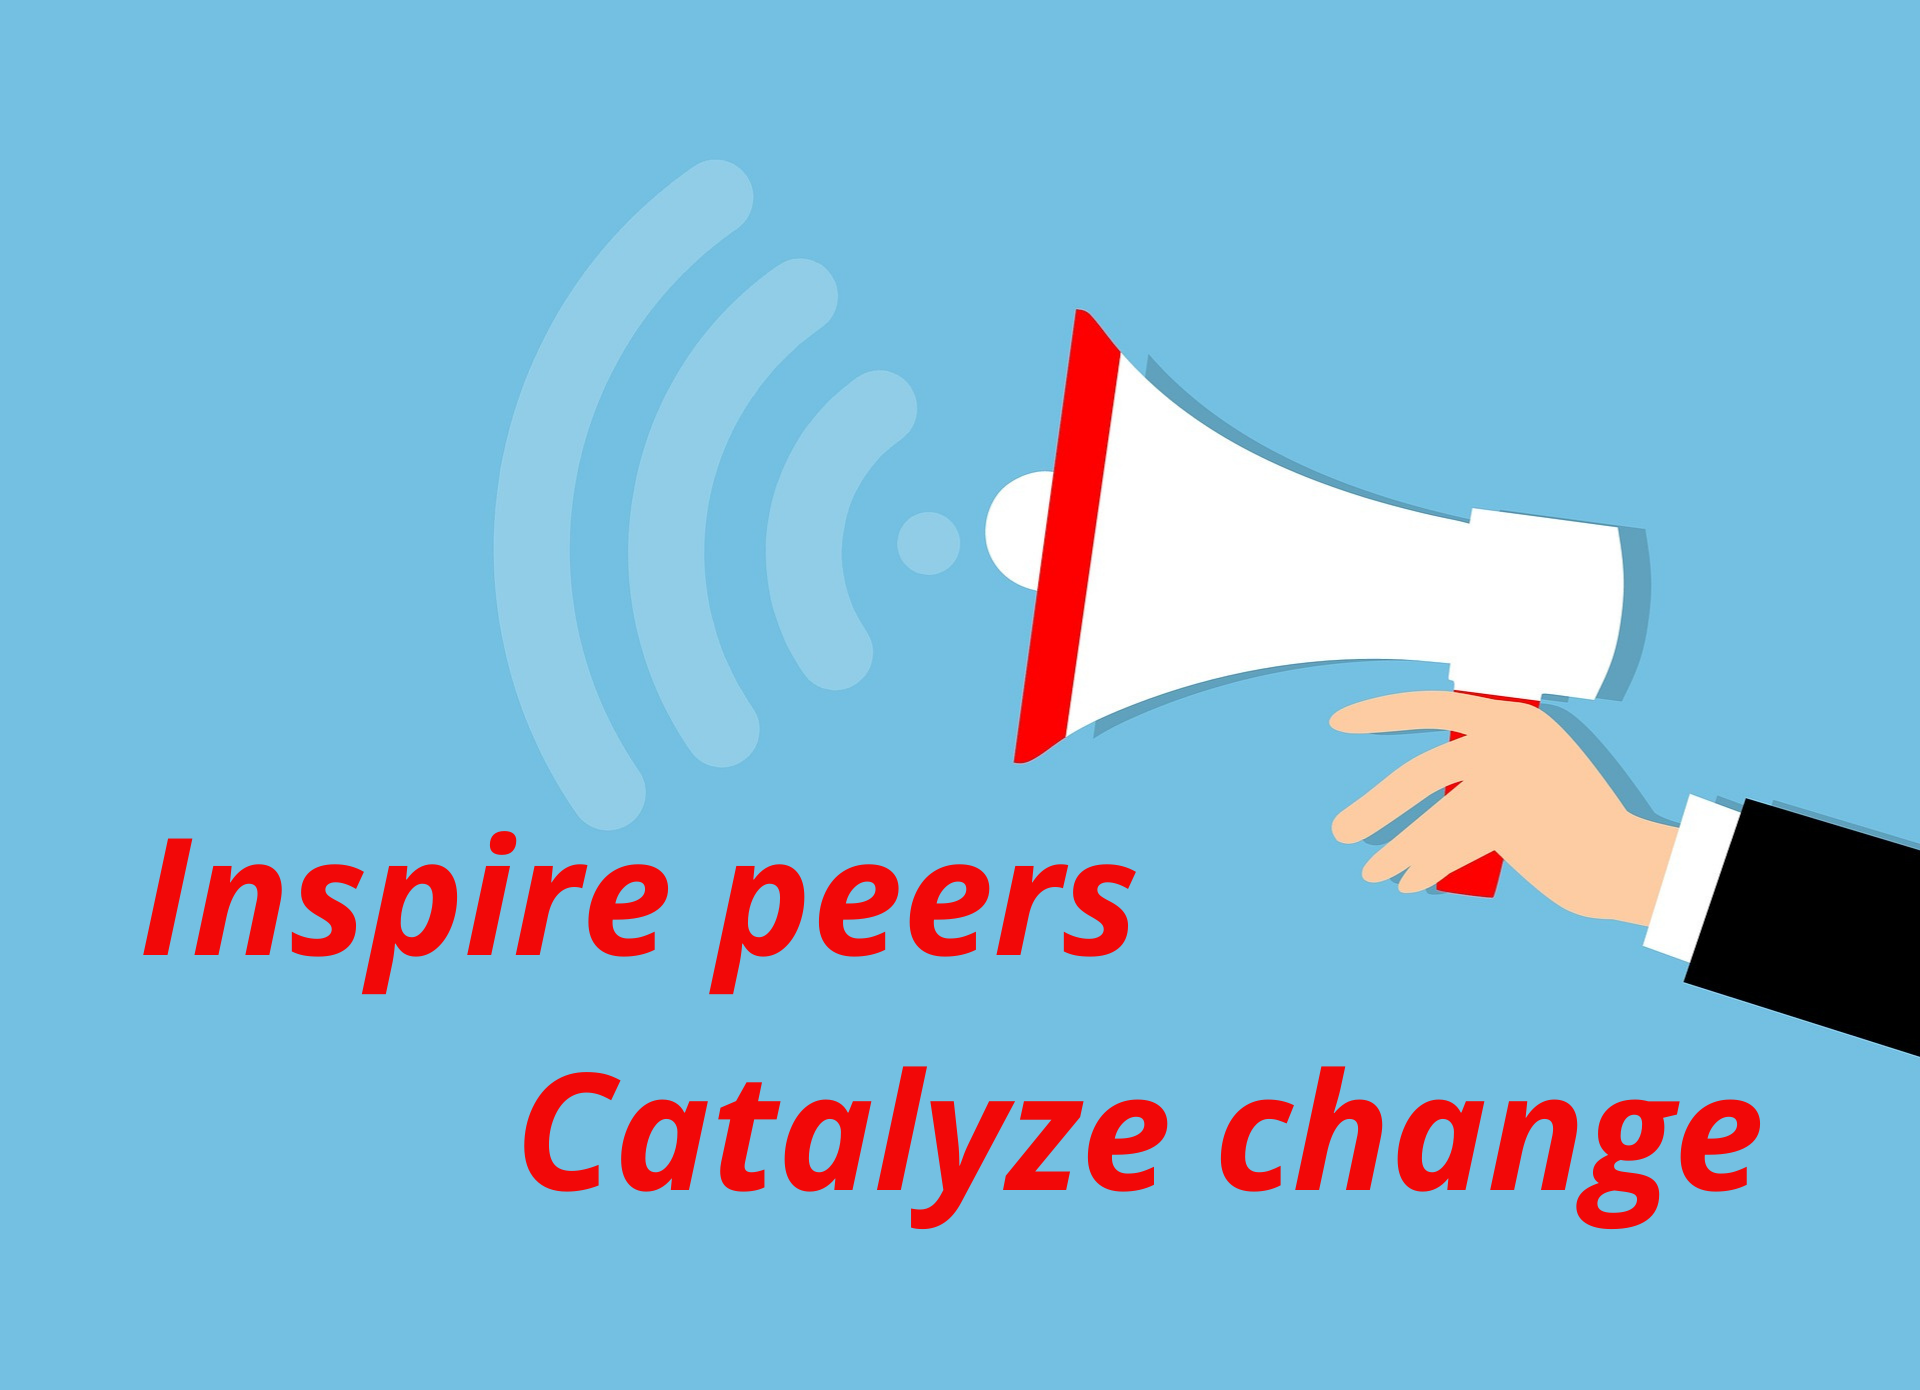 Inspire peers, catalyze change